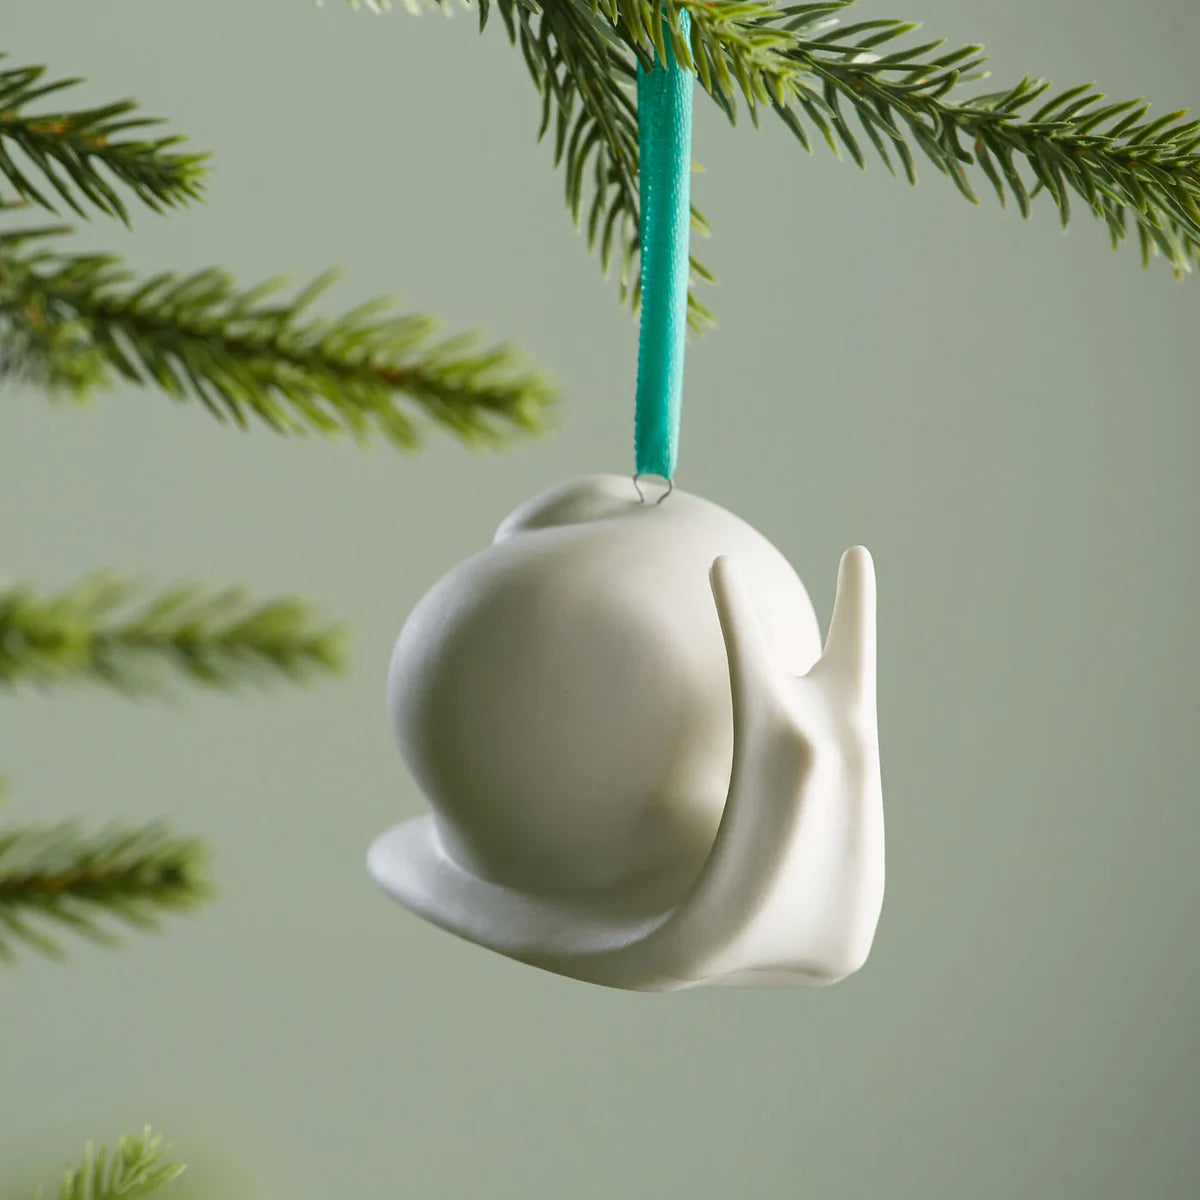 Snail Ornament. Jonathan Adler